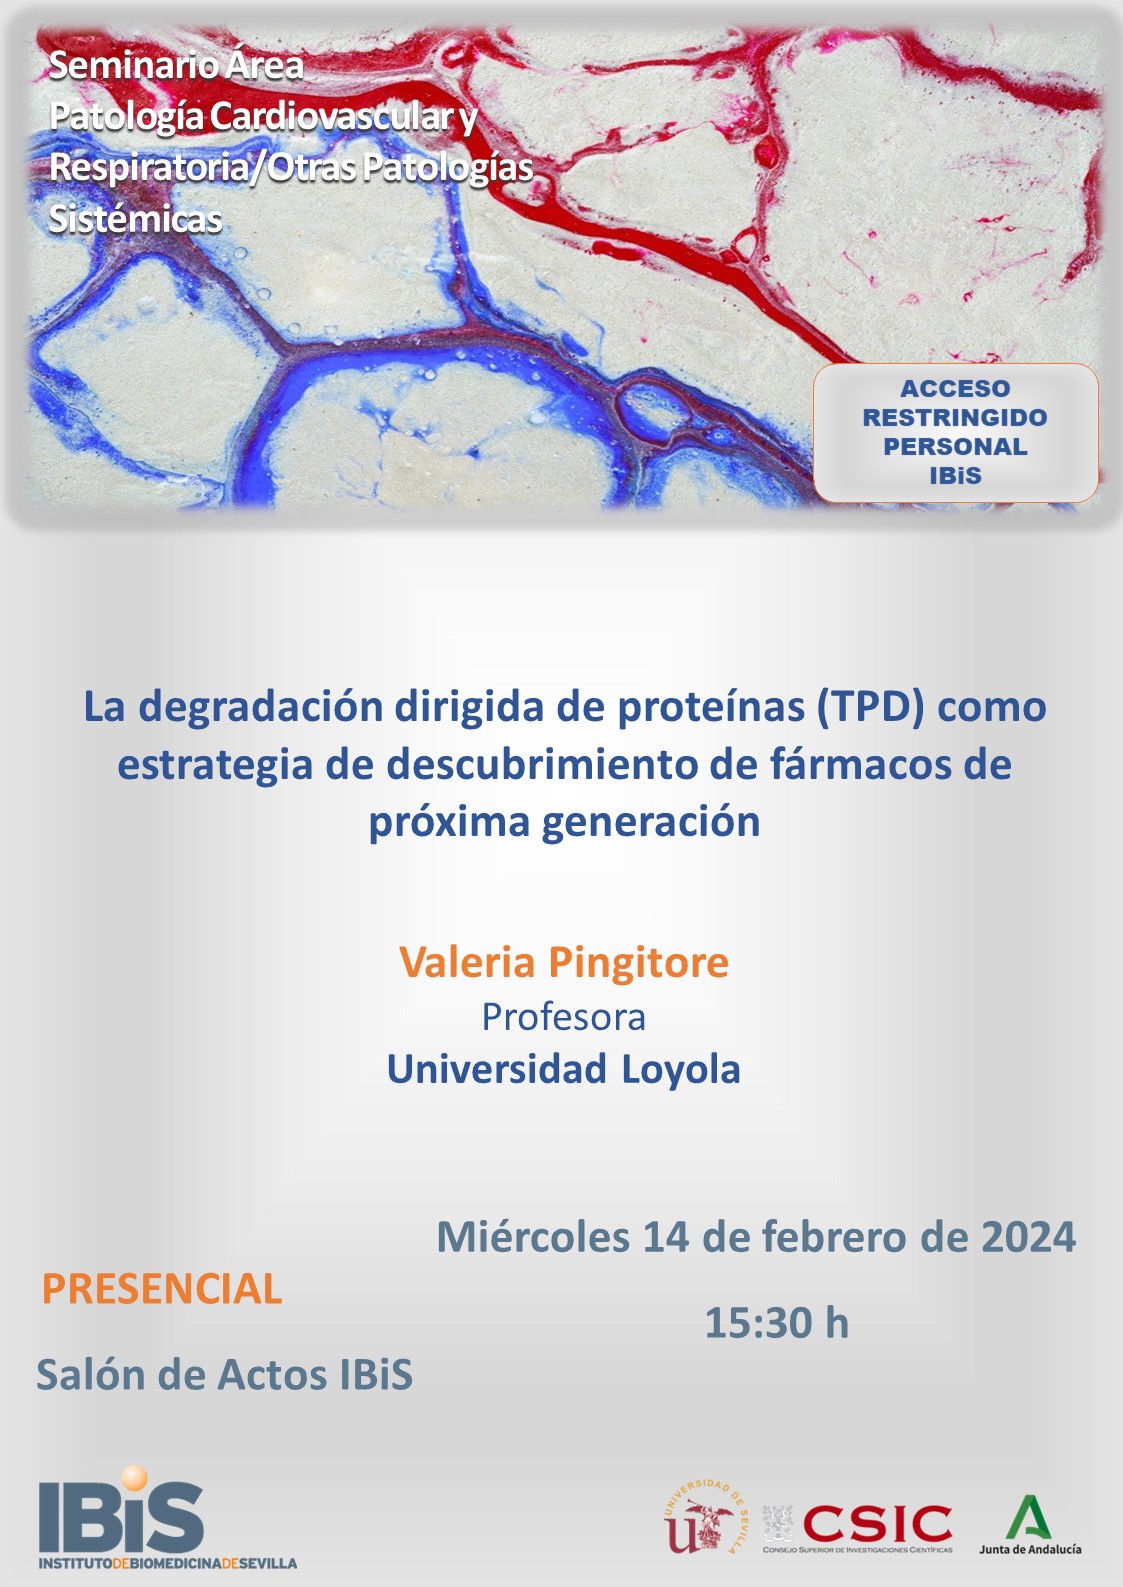 Poster: La degradación dirigida de proteínas (TPD) como estrategia de descubrimiento de fármacos de próxima generación